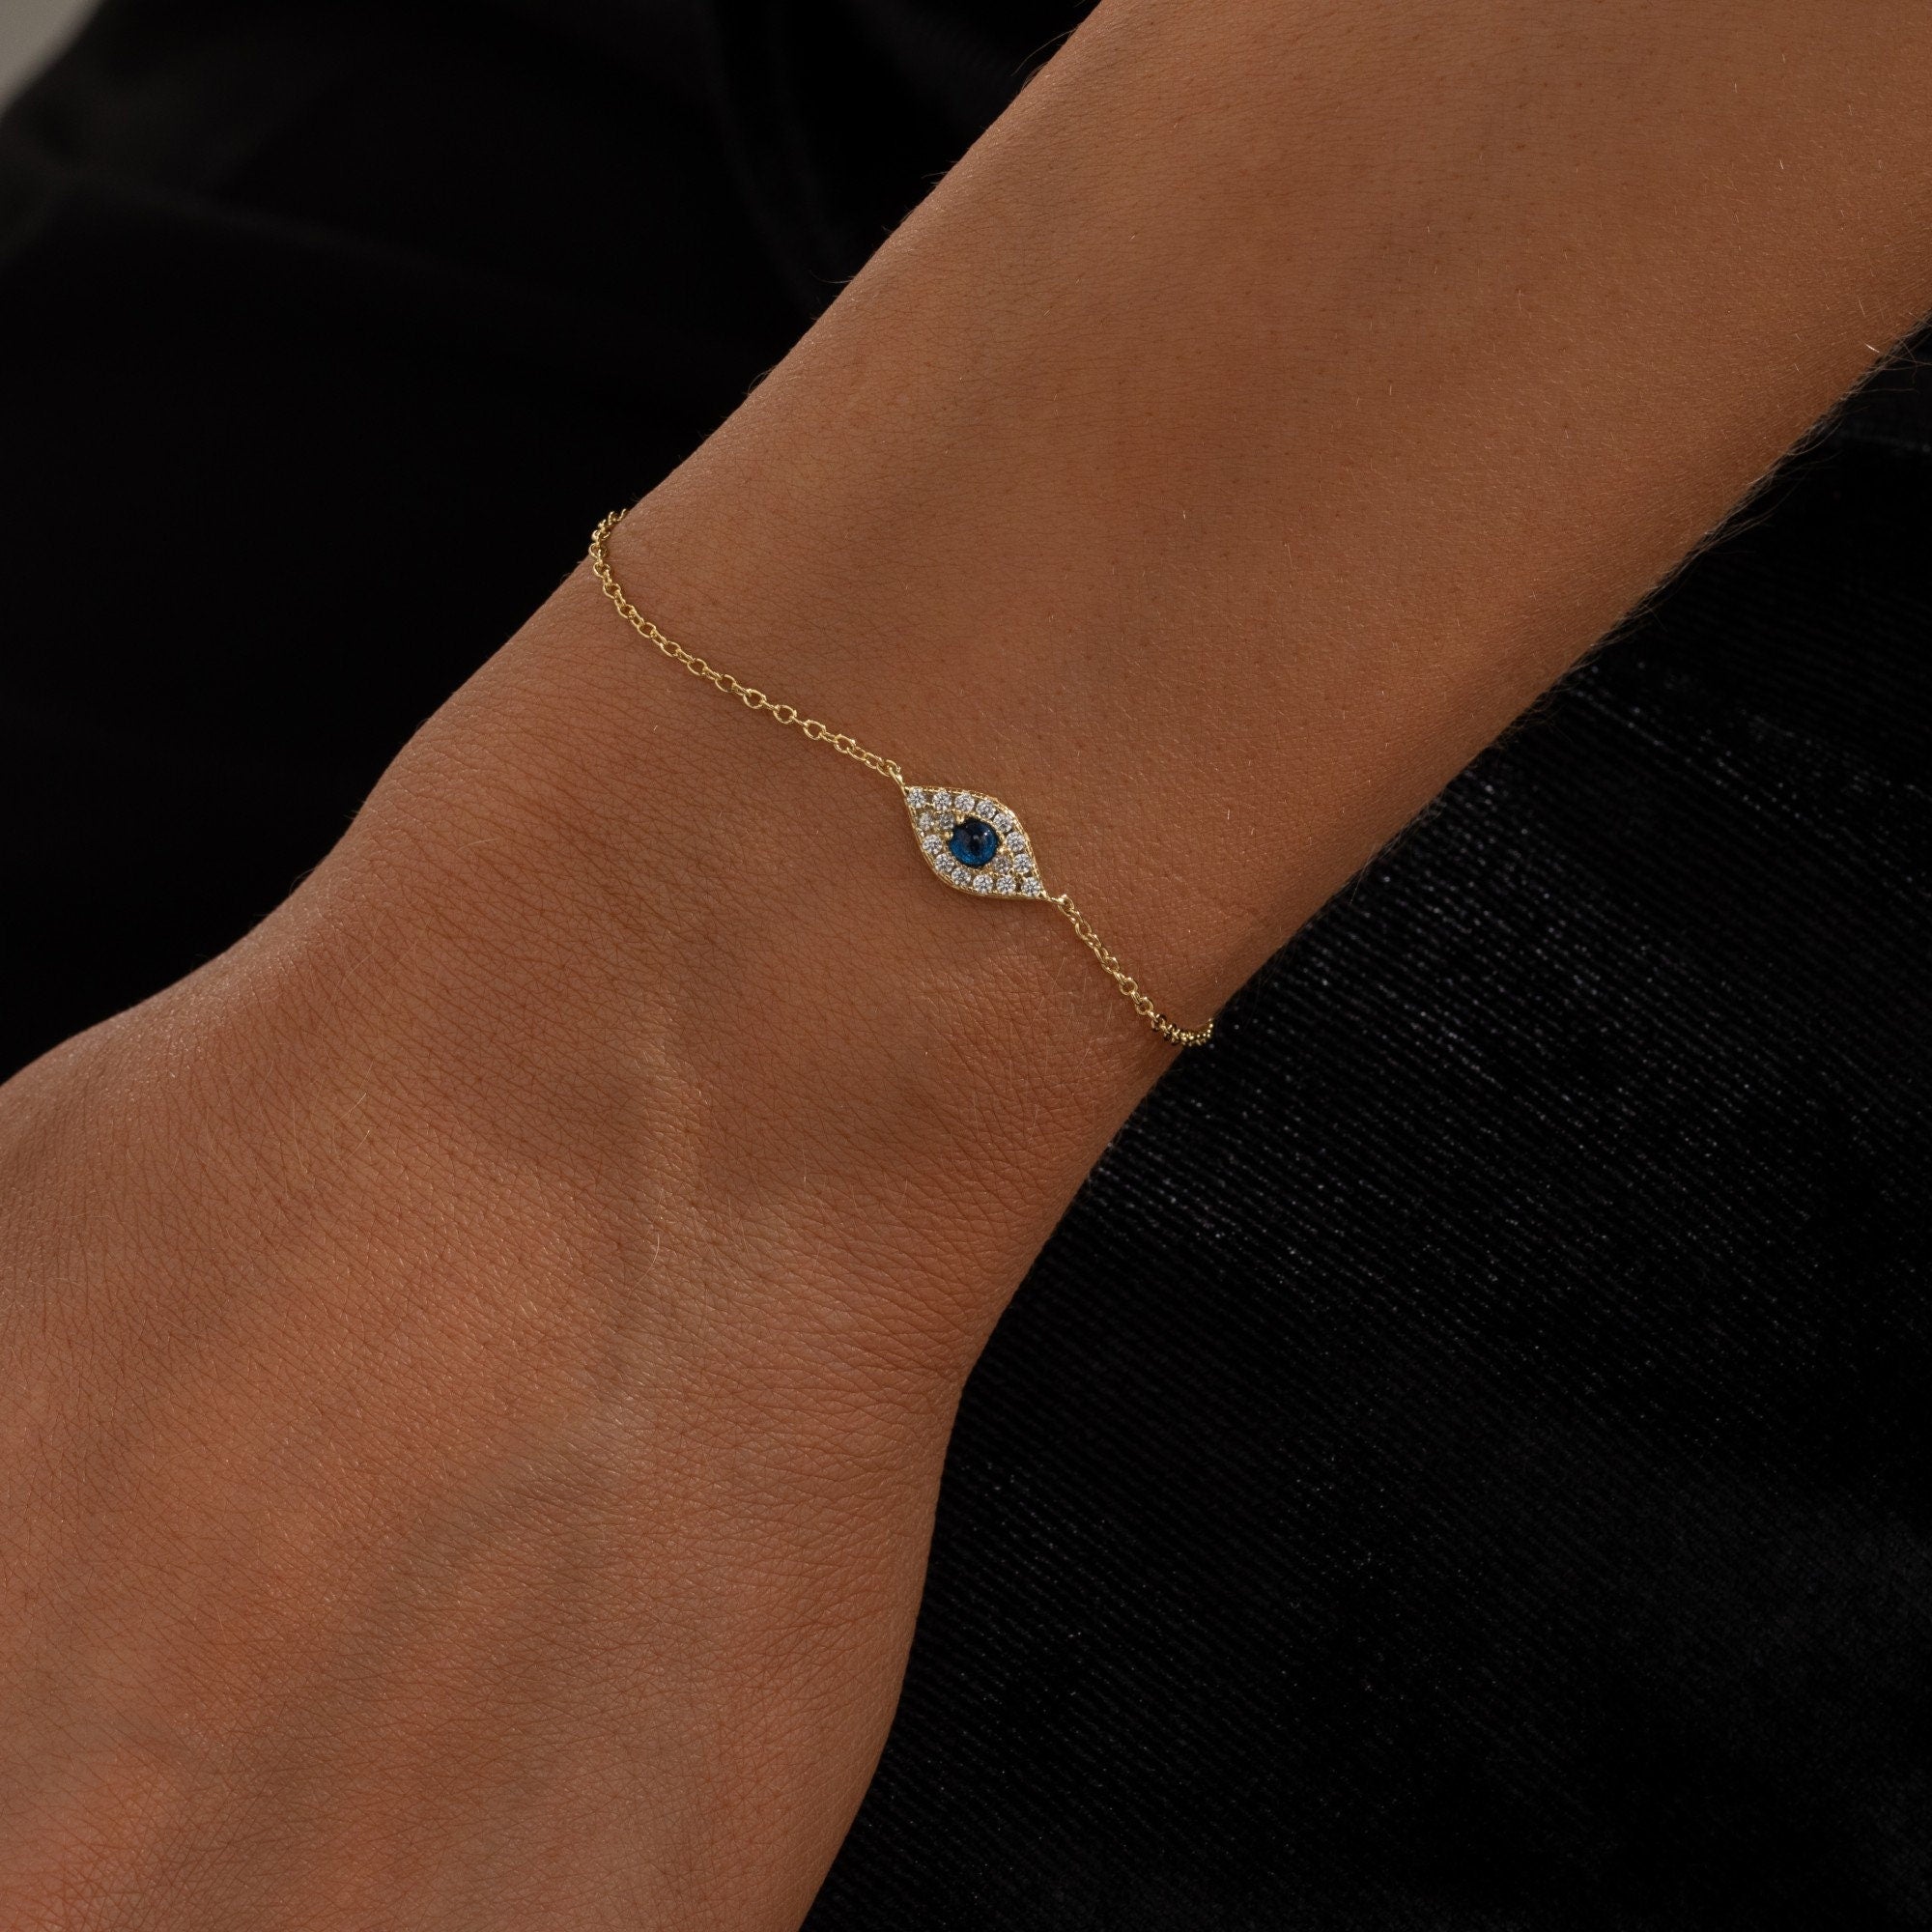 Zahra. - Minimalist Arabic Jewellery from Qatar